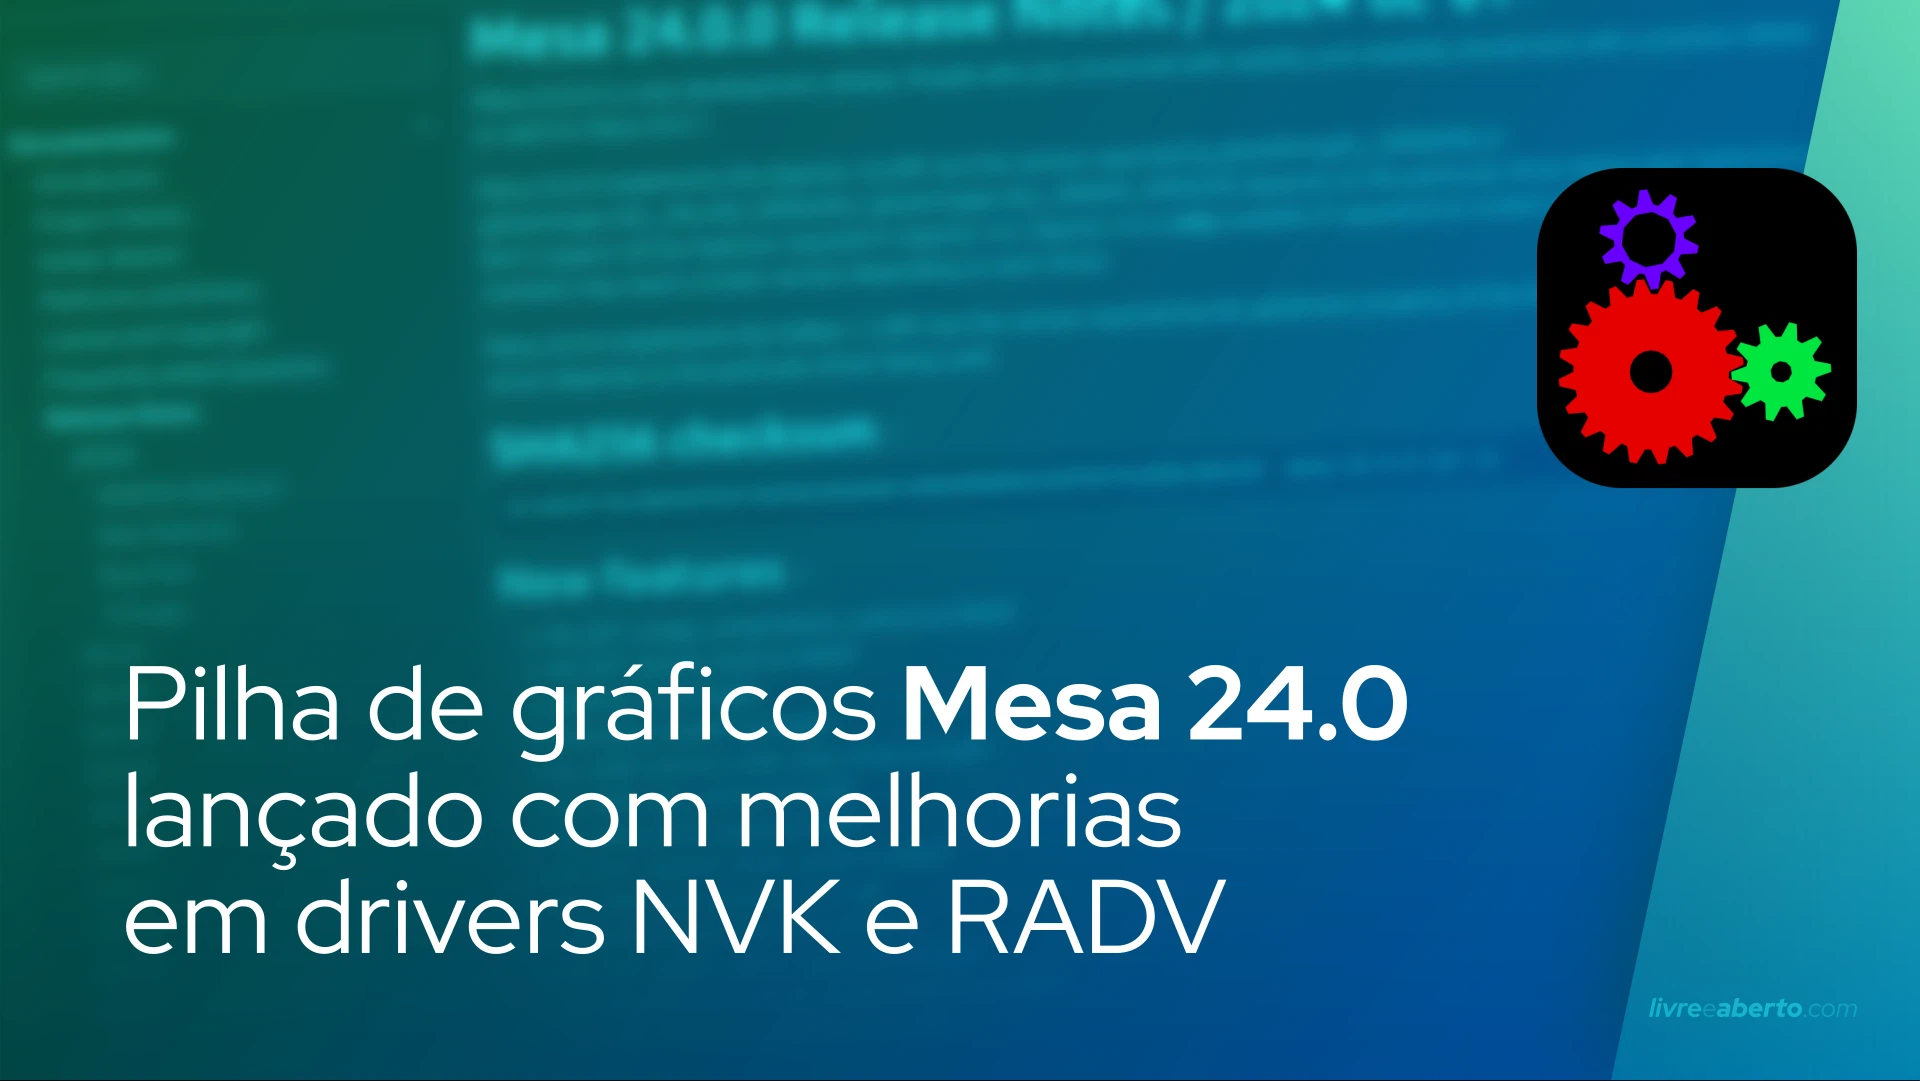 Pilha de gráficos Mesa 24.0 lançado com melhorias em drivers NVK e RADV